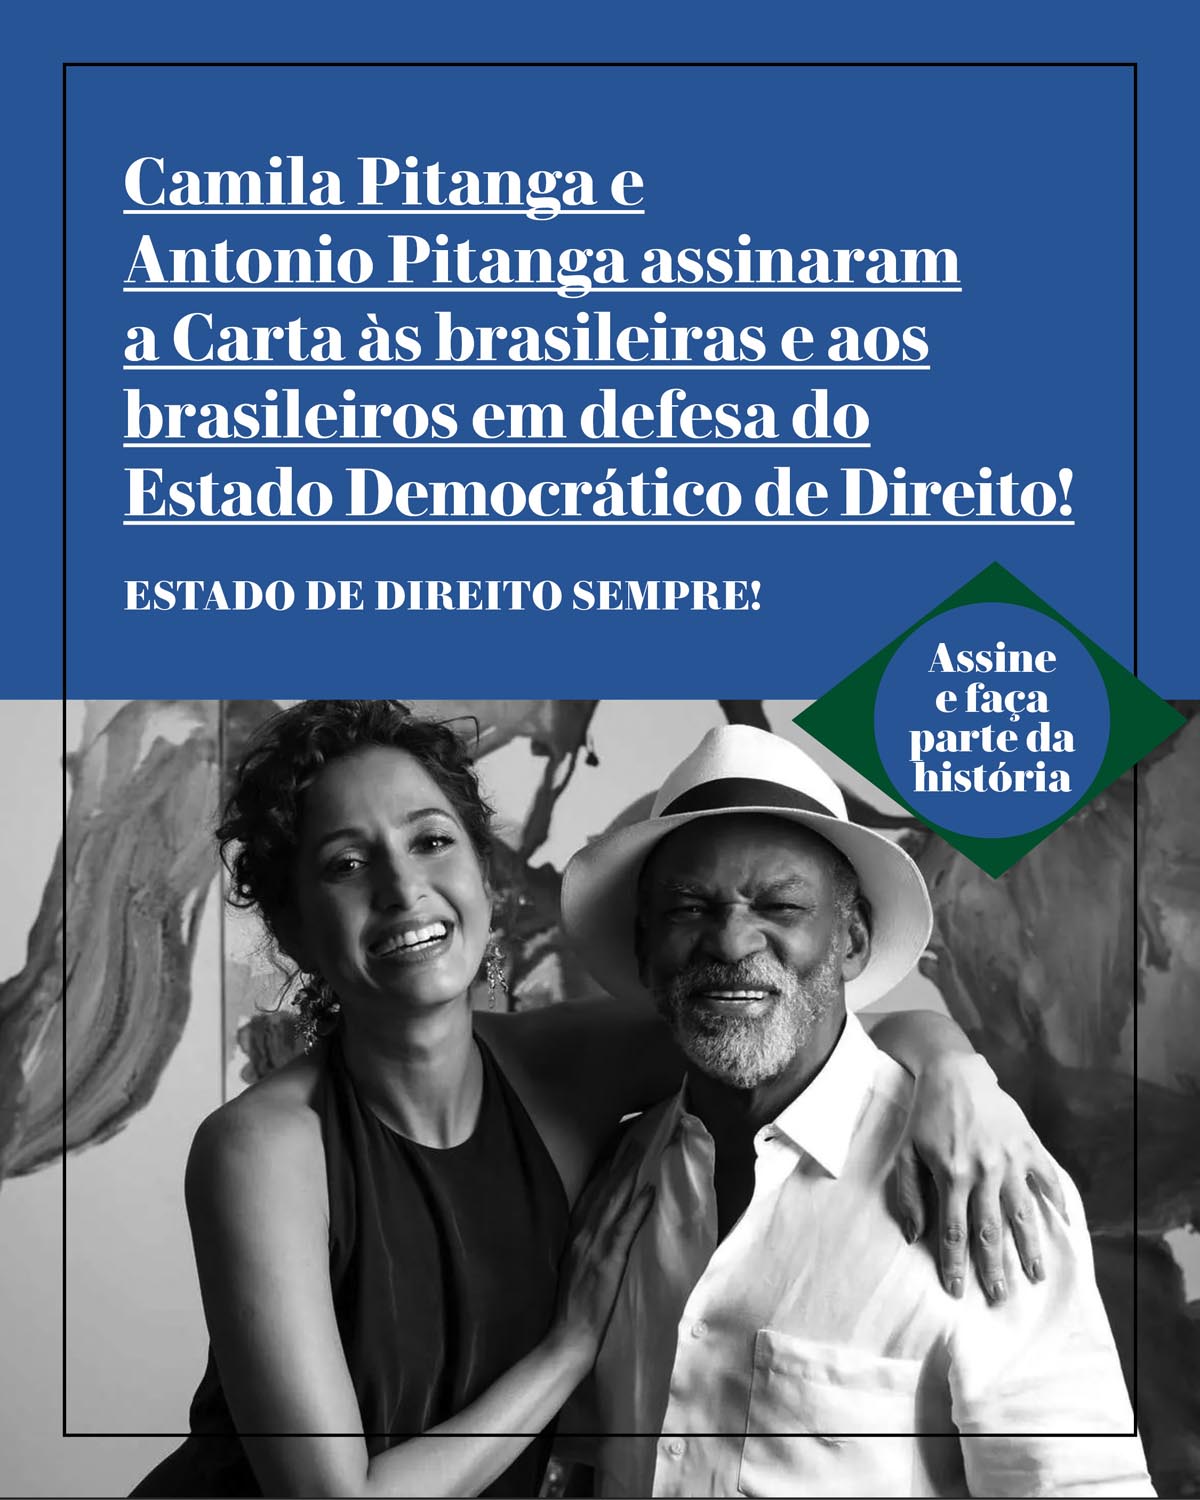 Camila Pitanga e Antonio Pitanga assinaram a Carta às brasileiras e aos brasileiros em defesa do Estado Democrático de Direito!